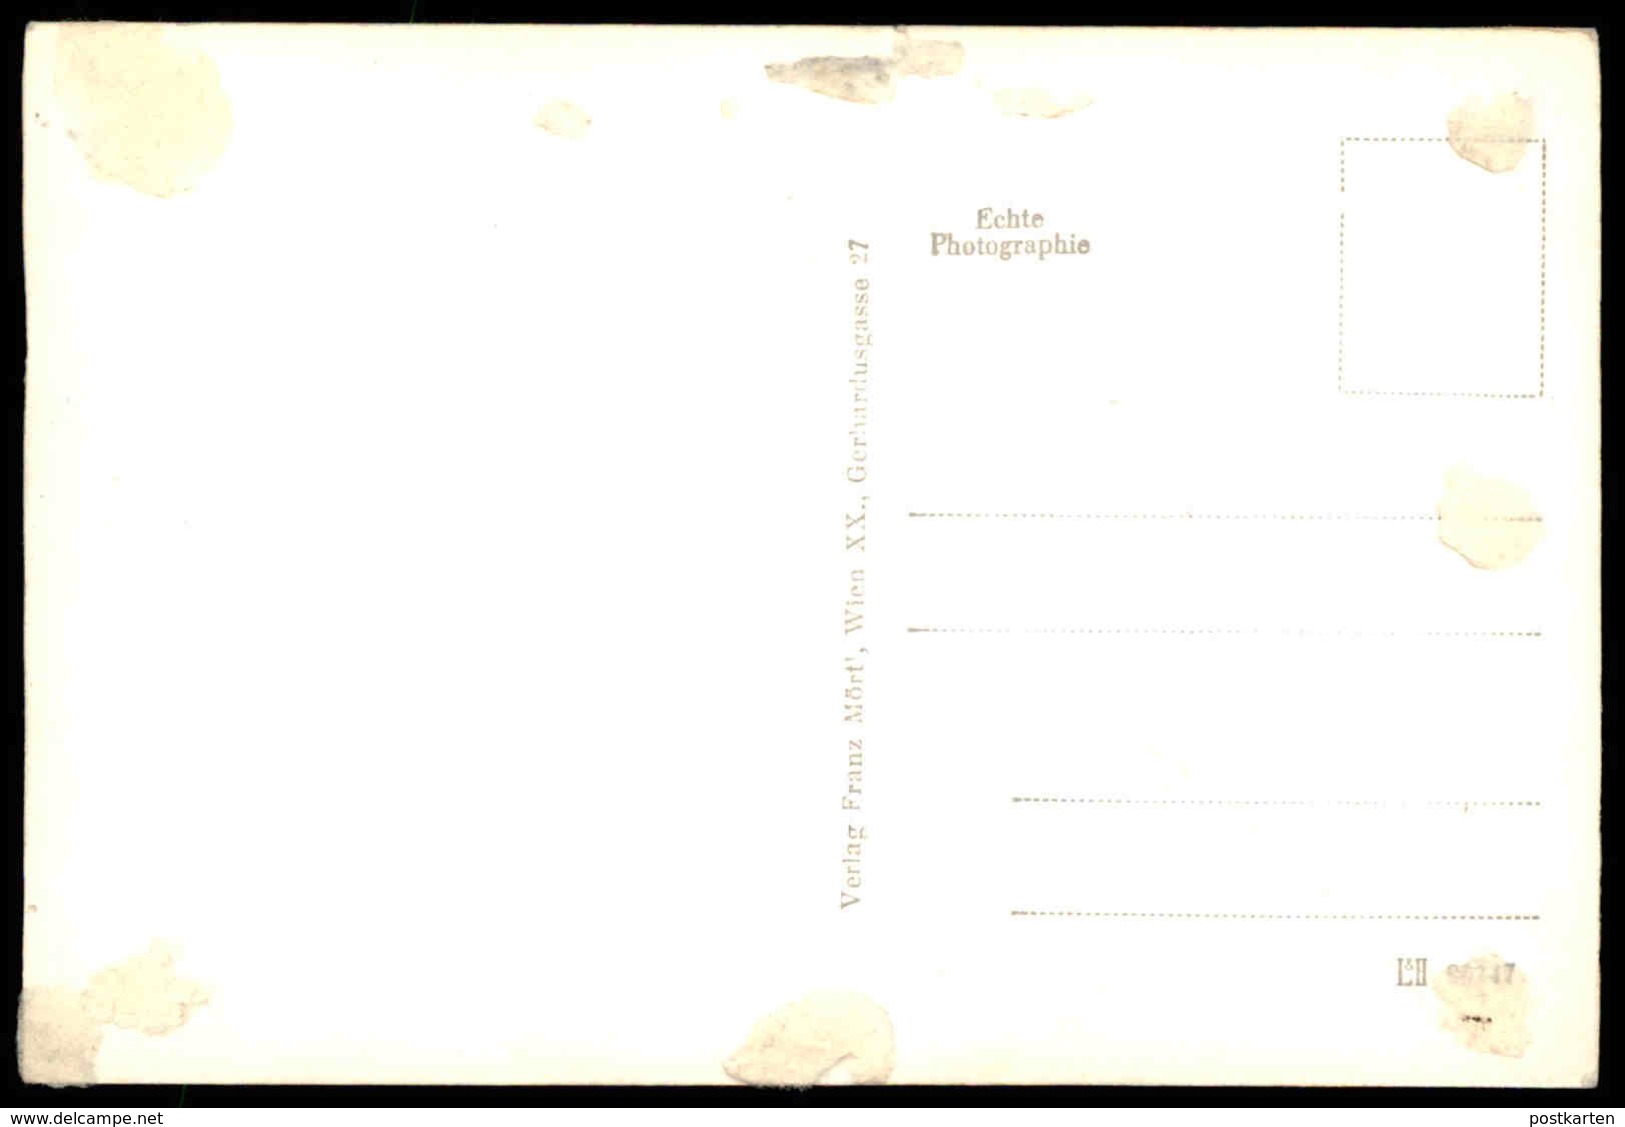 ALTE POSTKARTE BRUCK AN DER LEITHA N.Ö. KIRCHENGASSE FEINKOST JOHANN WINKLER VERSICHERUNGEN REISEBÜRO Cpa AK Postcard - Bruck An Der Leitha